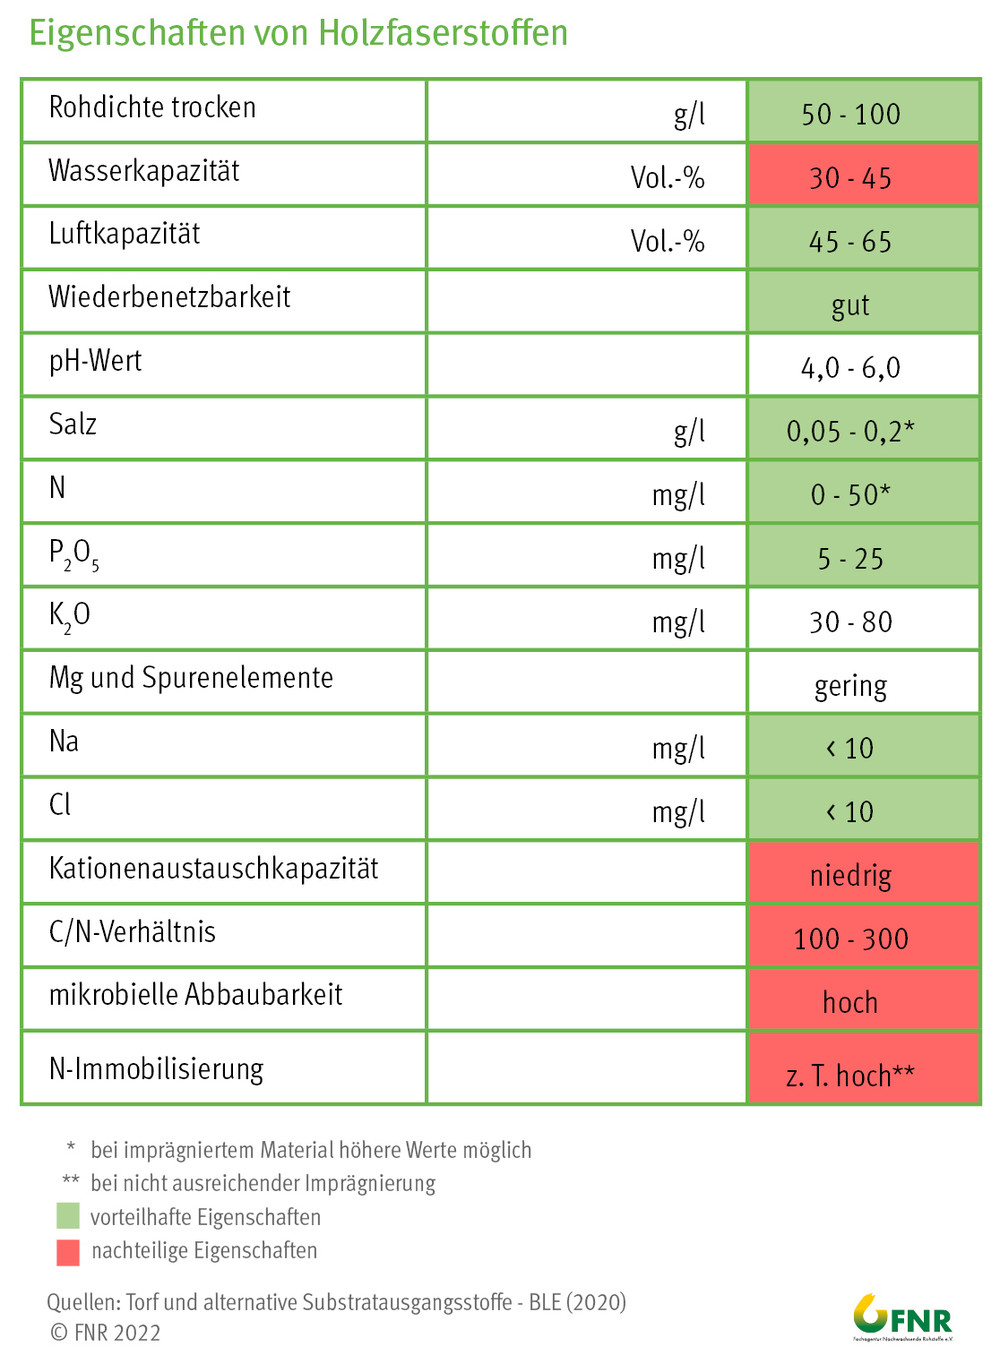 Eigenschaften von Holzfaserstoffen (Quelle: BLE, 2020)